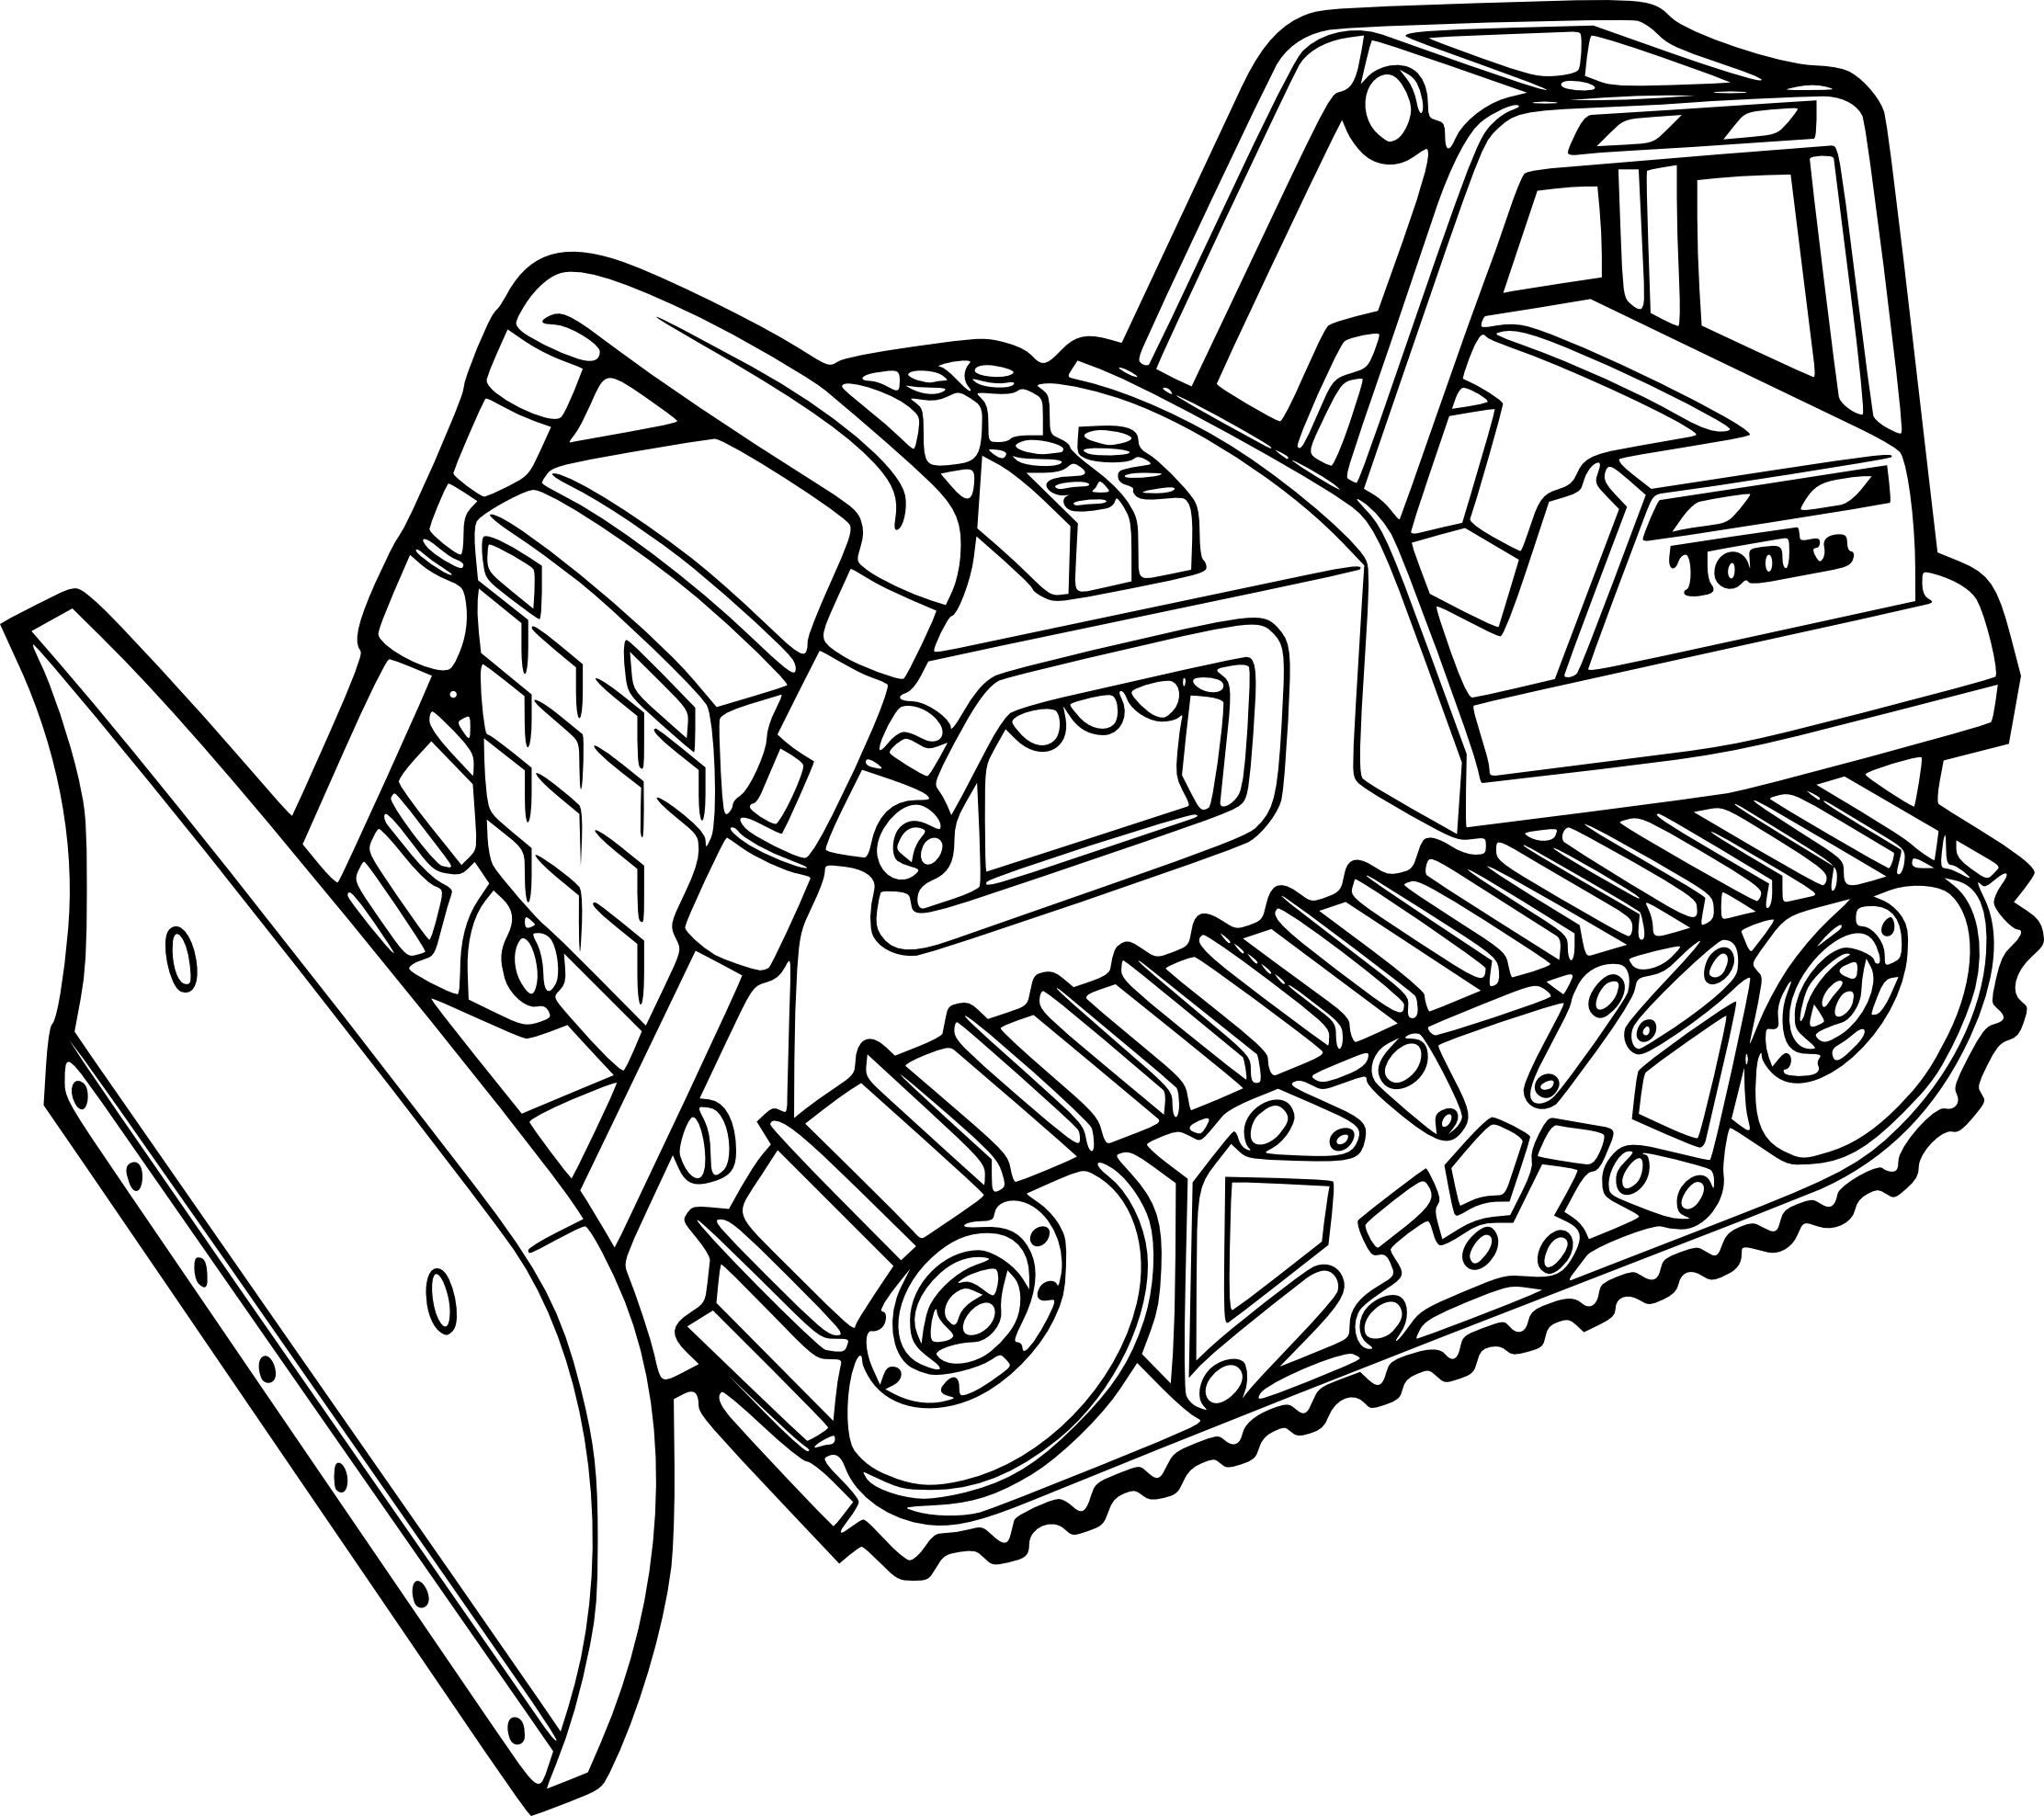 Disegno di Disegno del bulldozer e da colorare